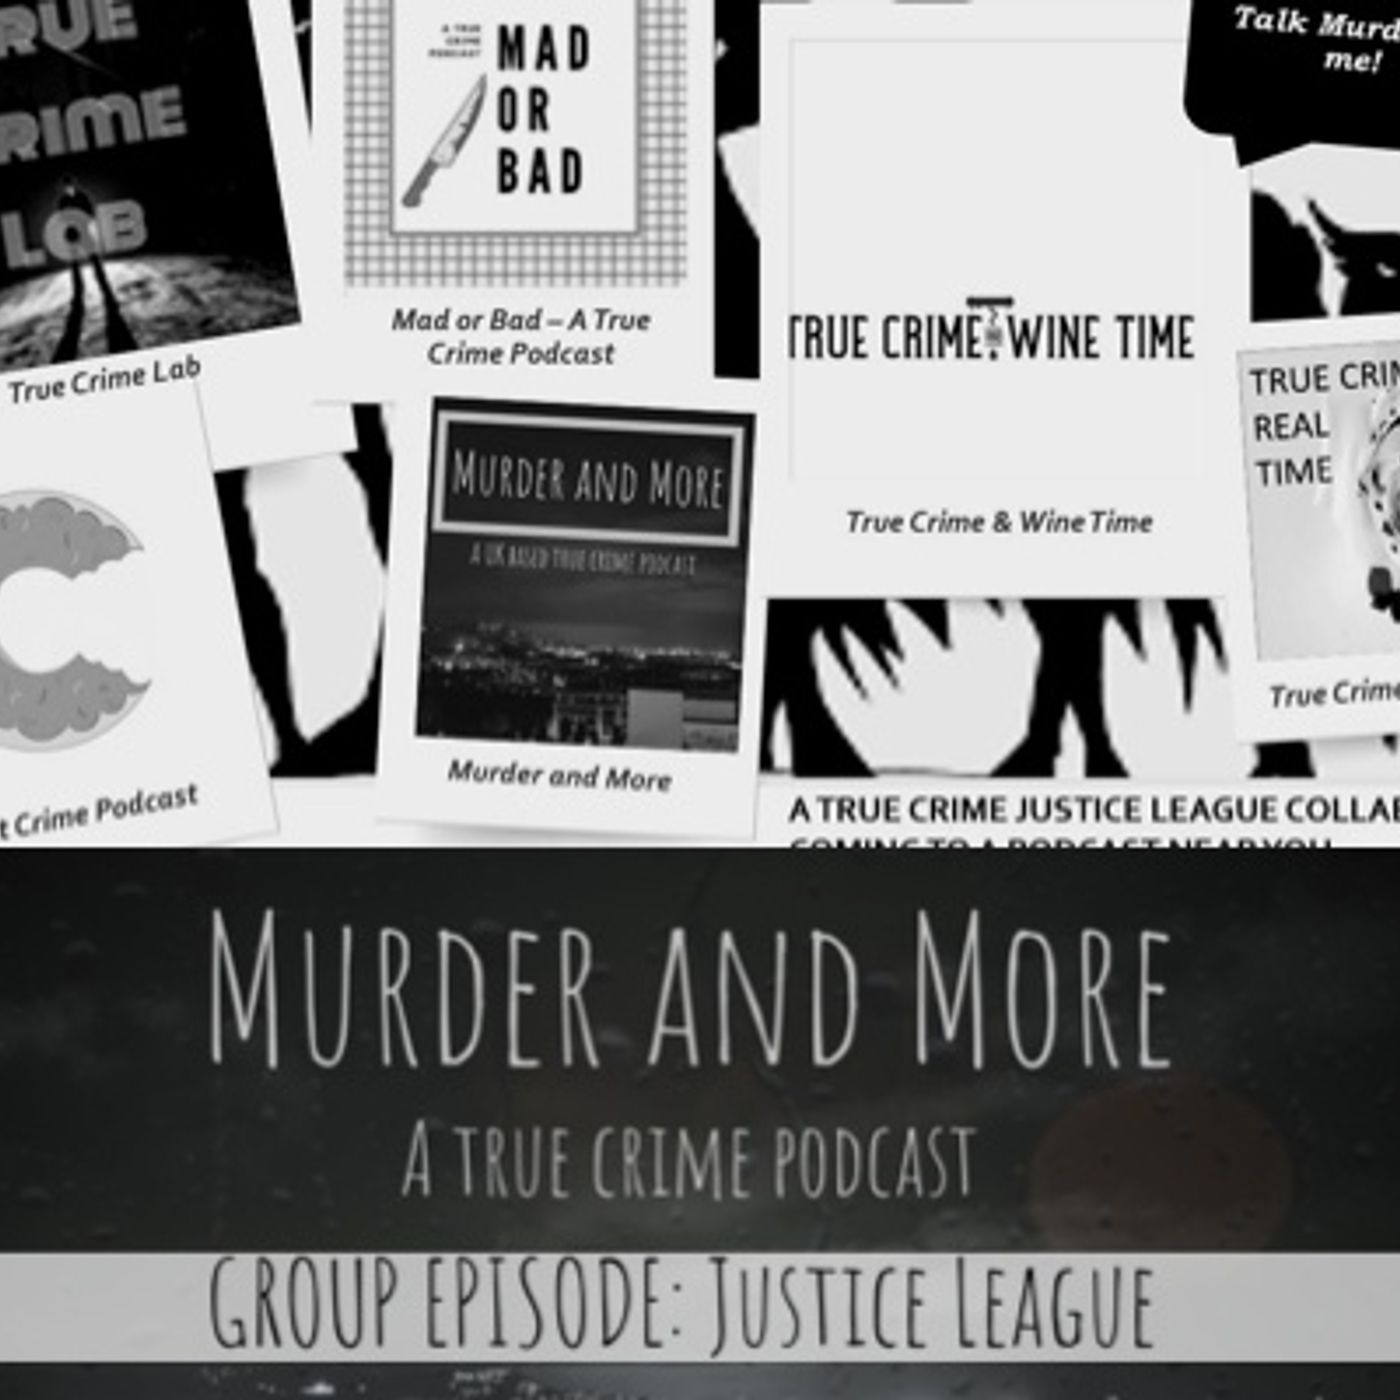 GROUP EPISODE: Justice League (Bonus episode)